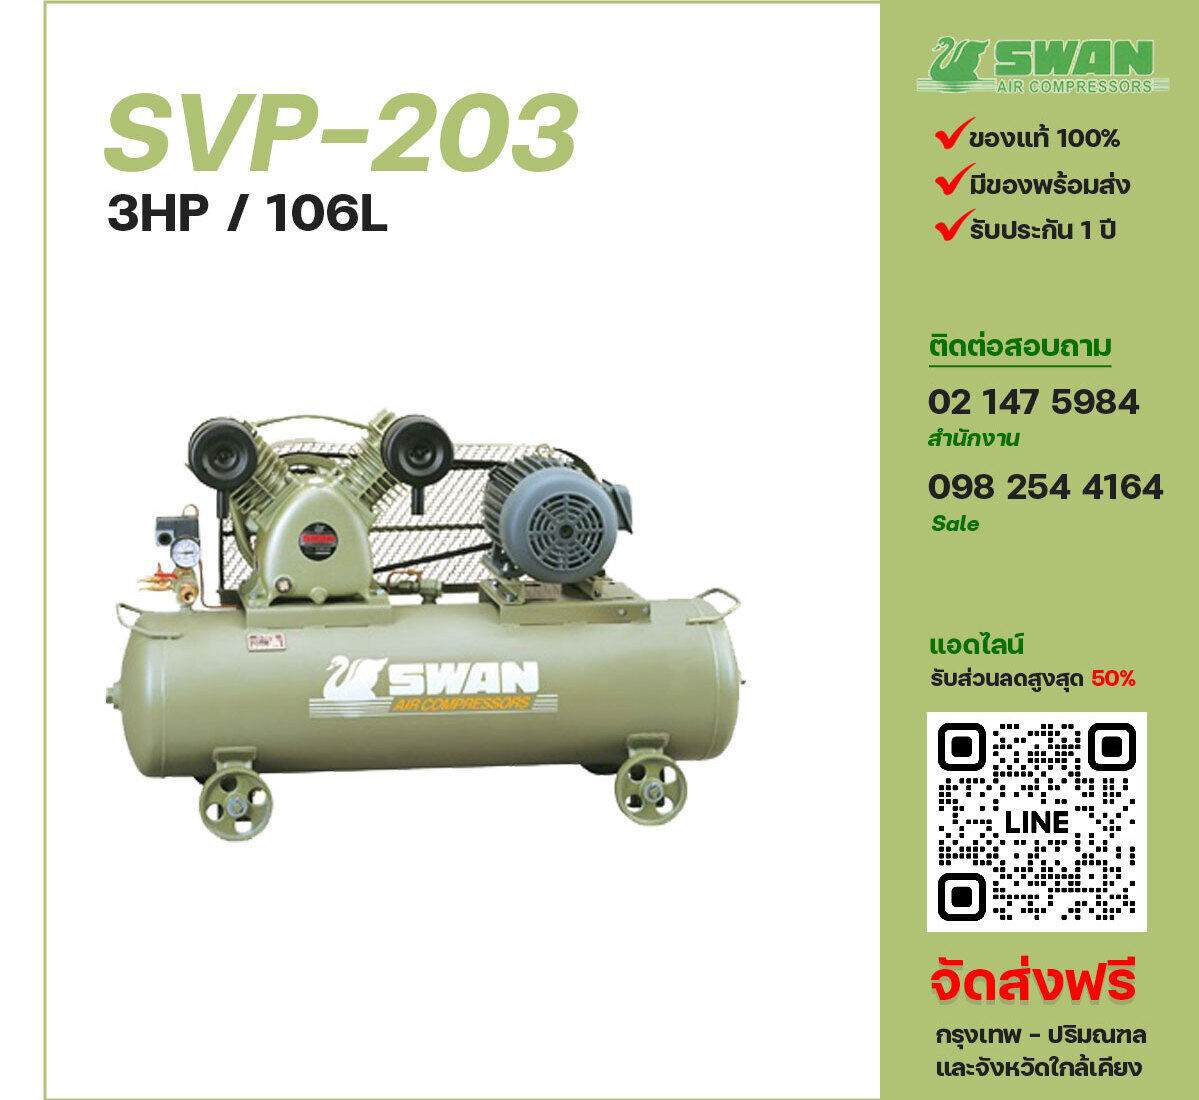 ปั๊มลมสวอน SWAN SVP-203 220V/380V ปั๊มลมลูกสูบ ขนาด 2 สูบ 3 แรงม้า 106 ลิตร SWAN พร้อมมอเตอร์ ไฟ 220V/380V ส่งฟรี กรุงเทพฯ-ปริมณฑล รับประกัน 1 ปี